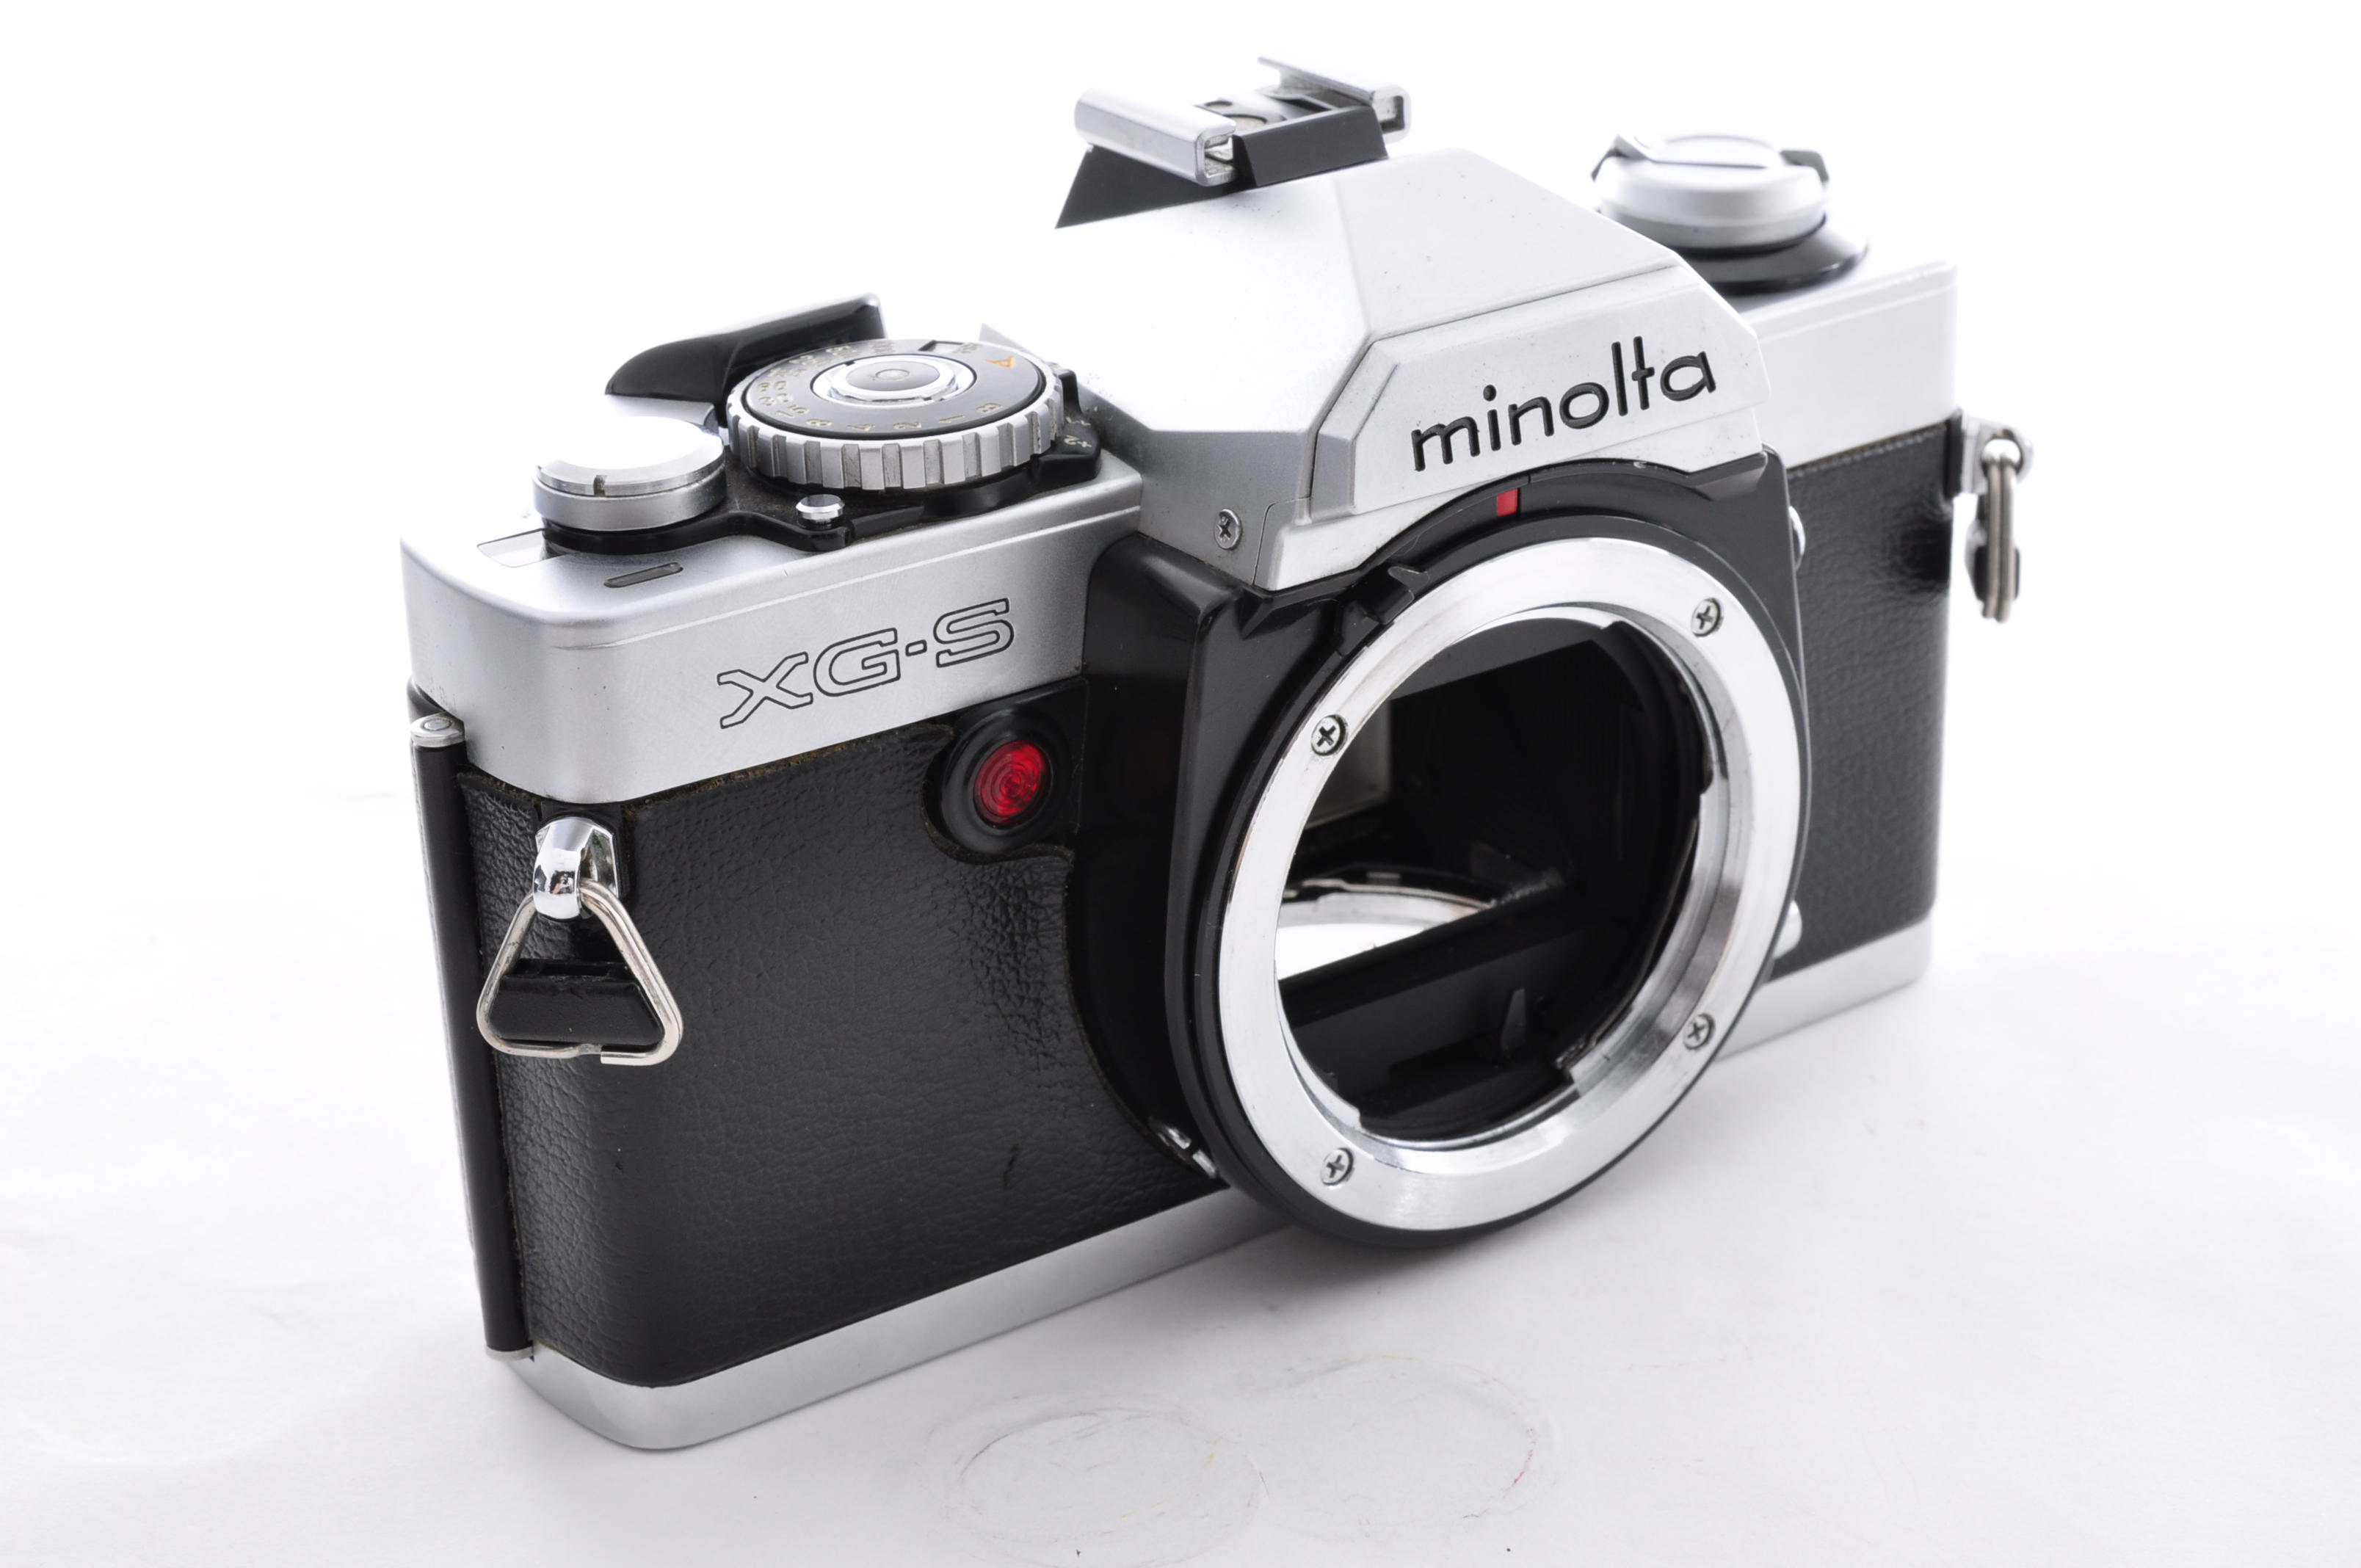 Minolta XG-S (XG-9) 35mm SLR Film Camera + MD 50mm F1.7 Lens [Near Mint] Japan img03